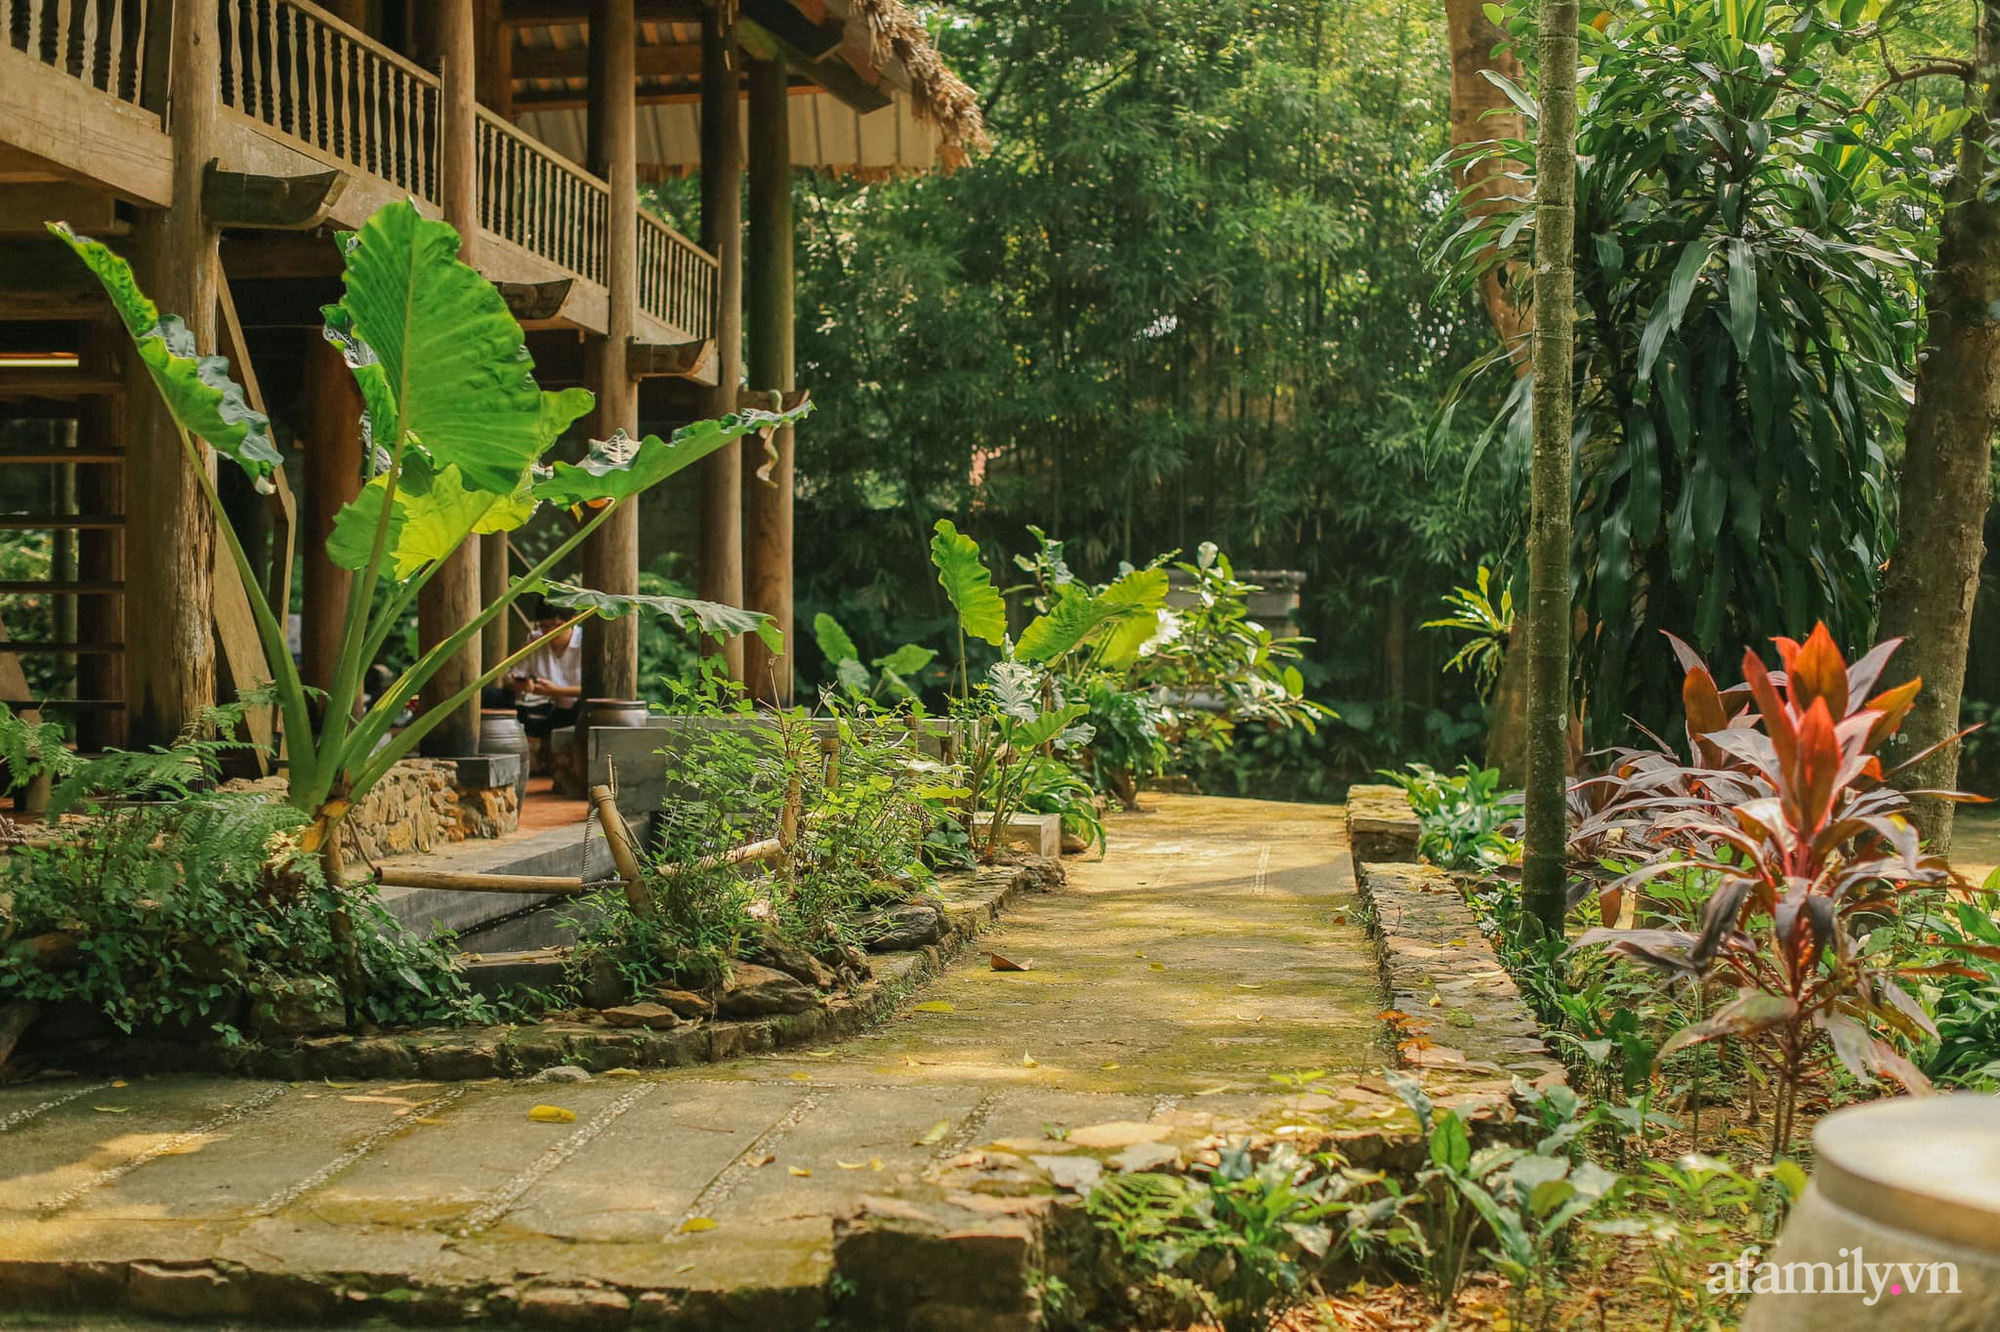 Cuộc sống yên bình trong ngôi nhà nhỏ cùng khu vườn xanh mát bóng cây ở ngoại thành Hà Nội - Ảnh 5.